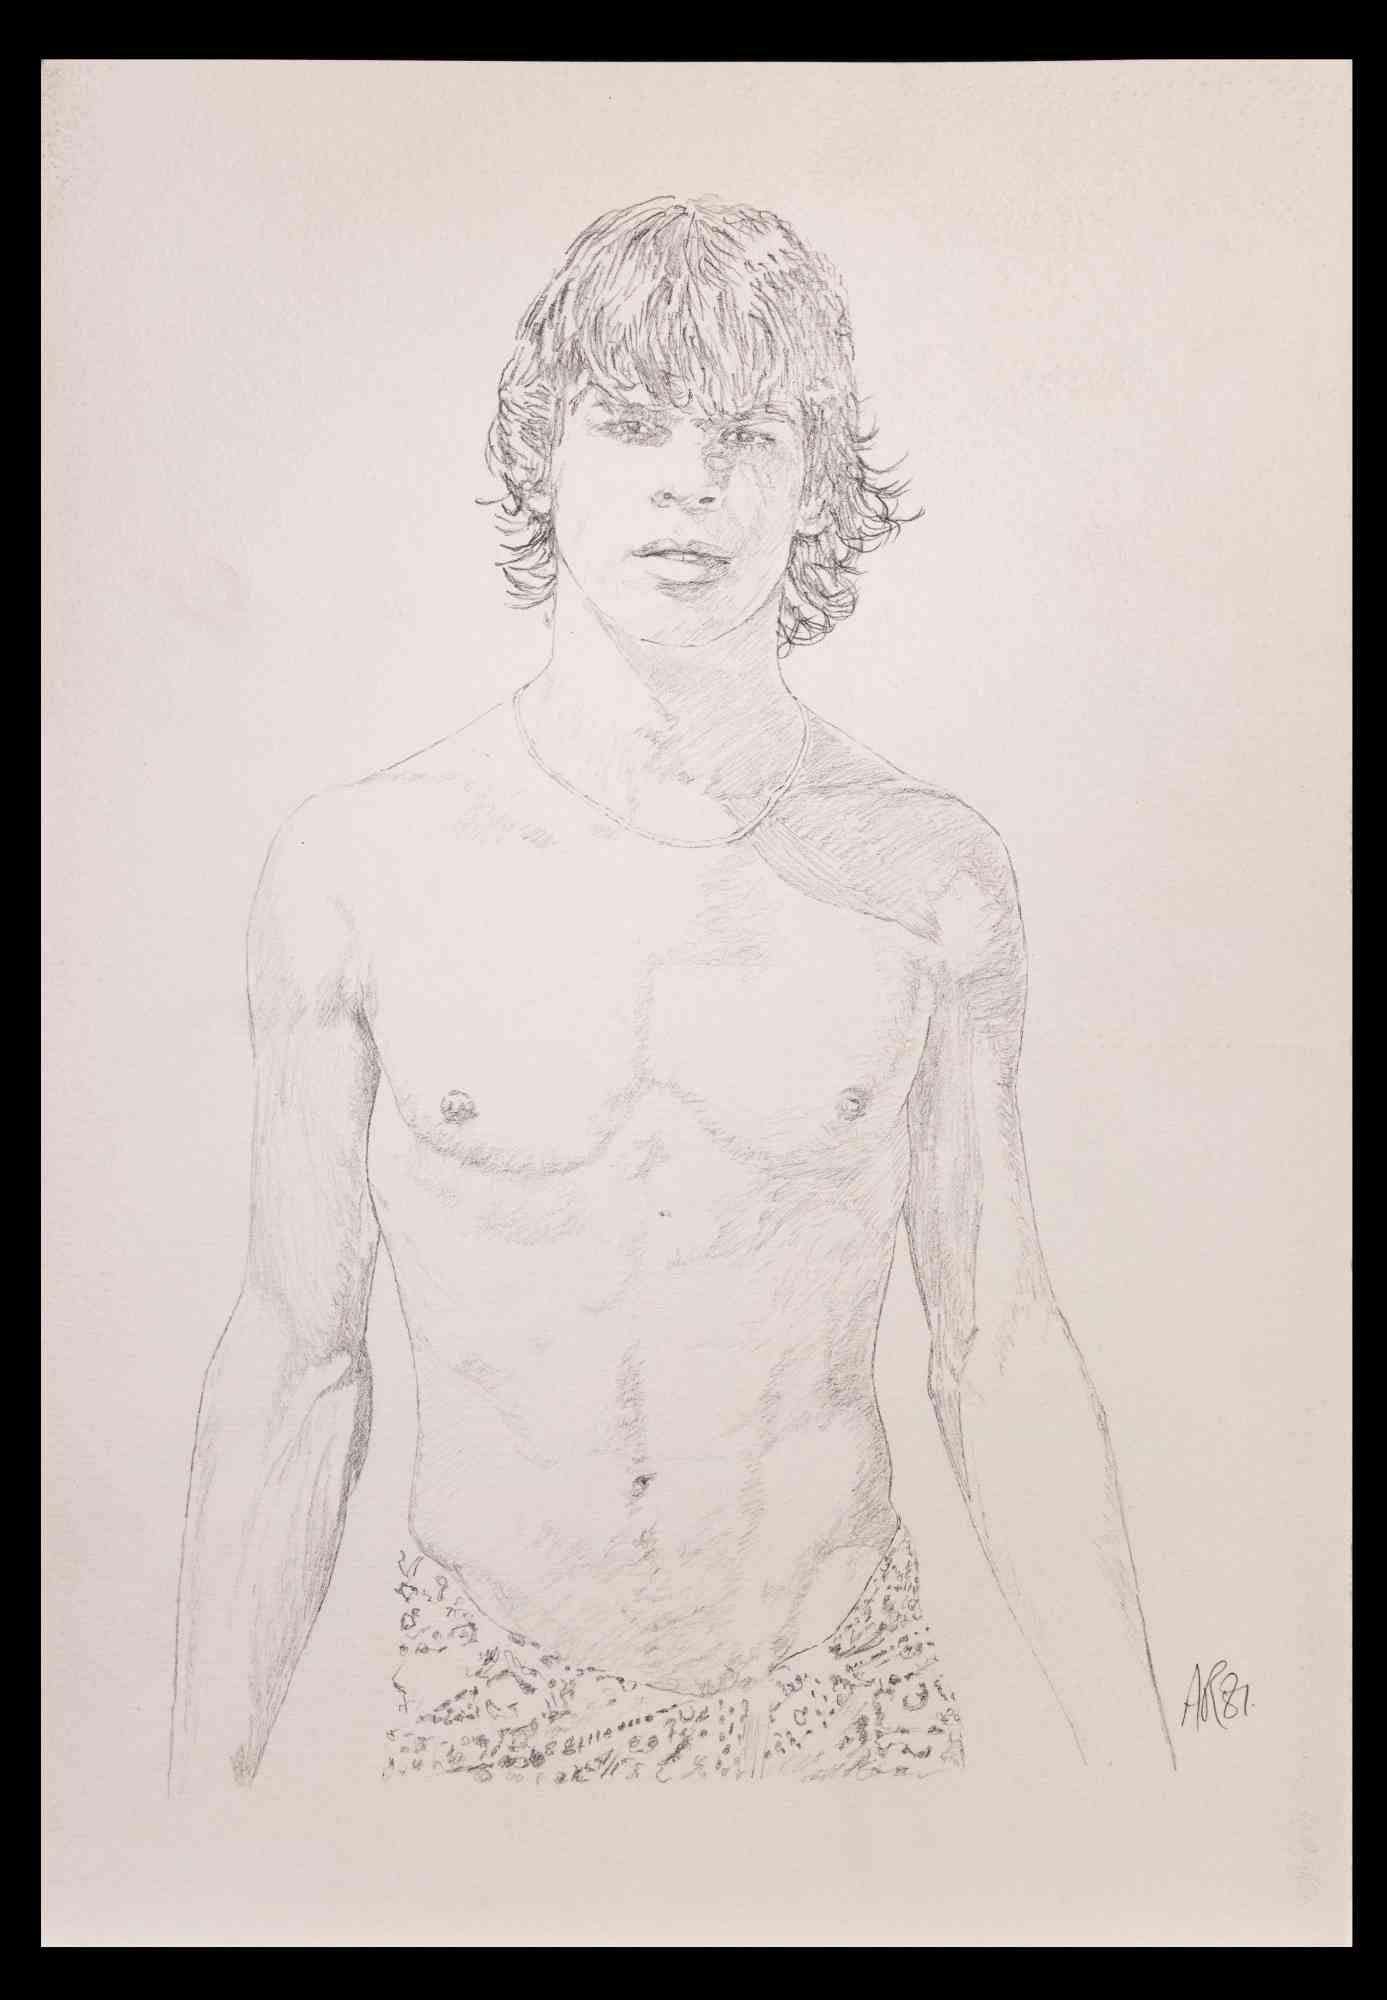 Porträt eines Jungen - Originalzeichnung von Anthony Roaland - 1981